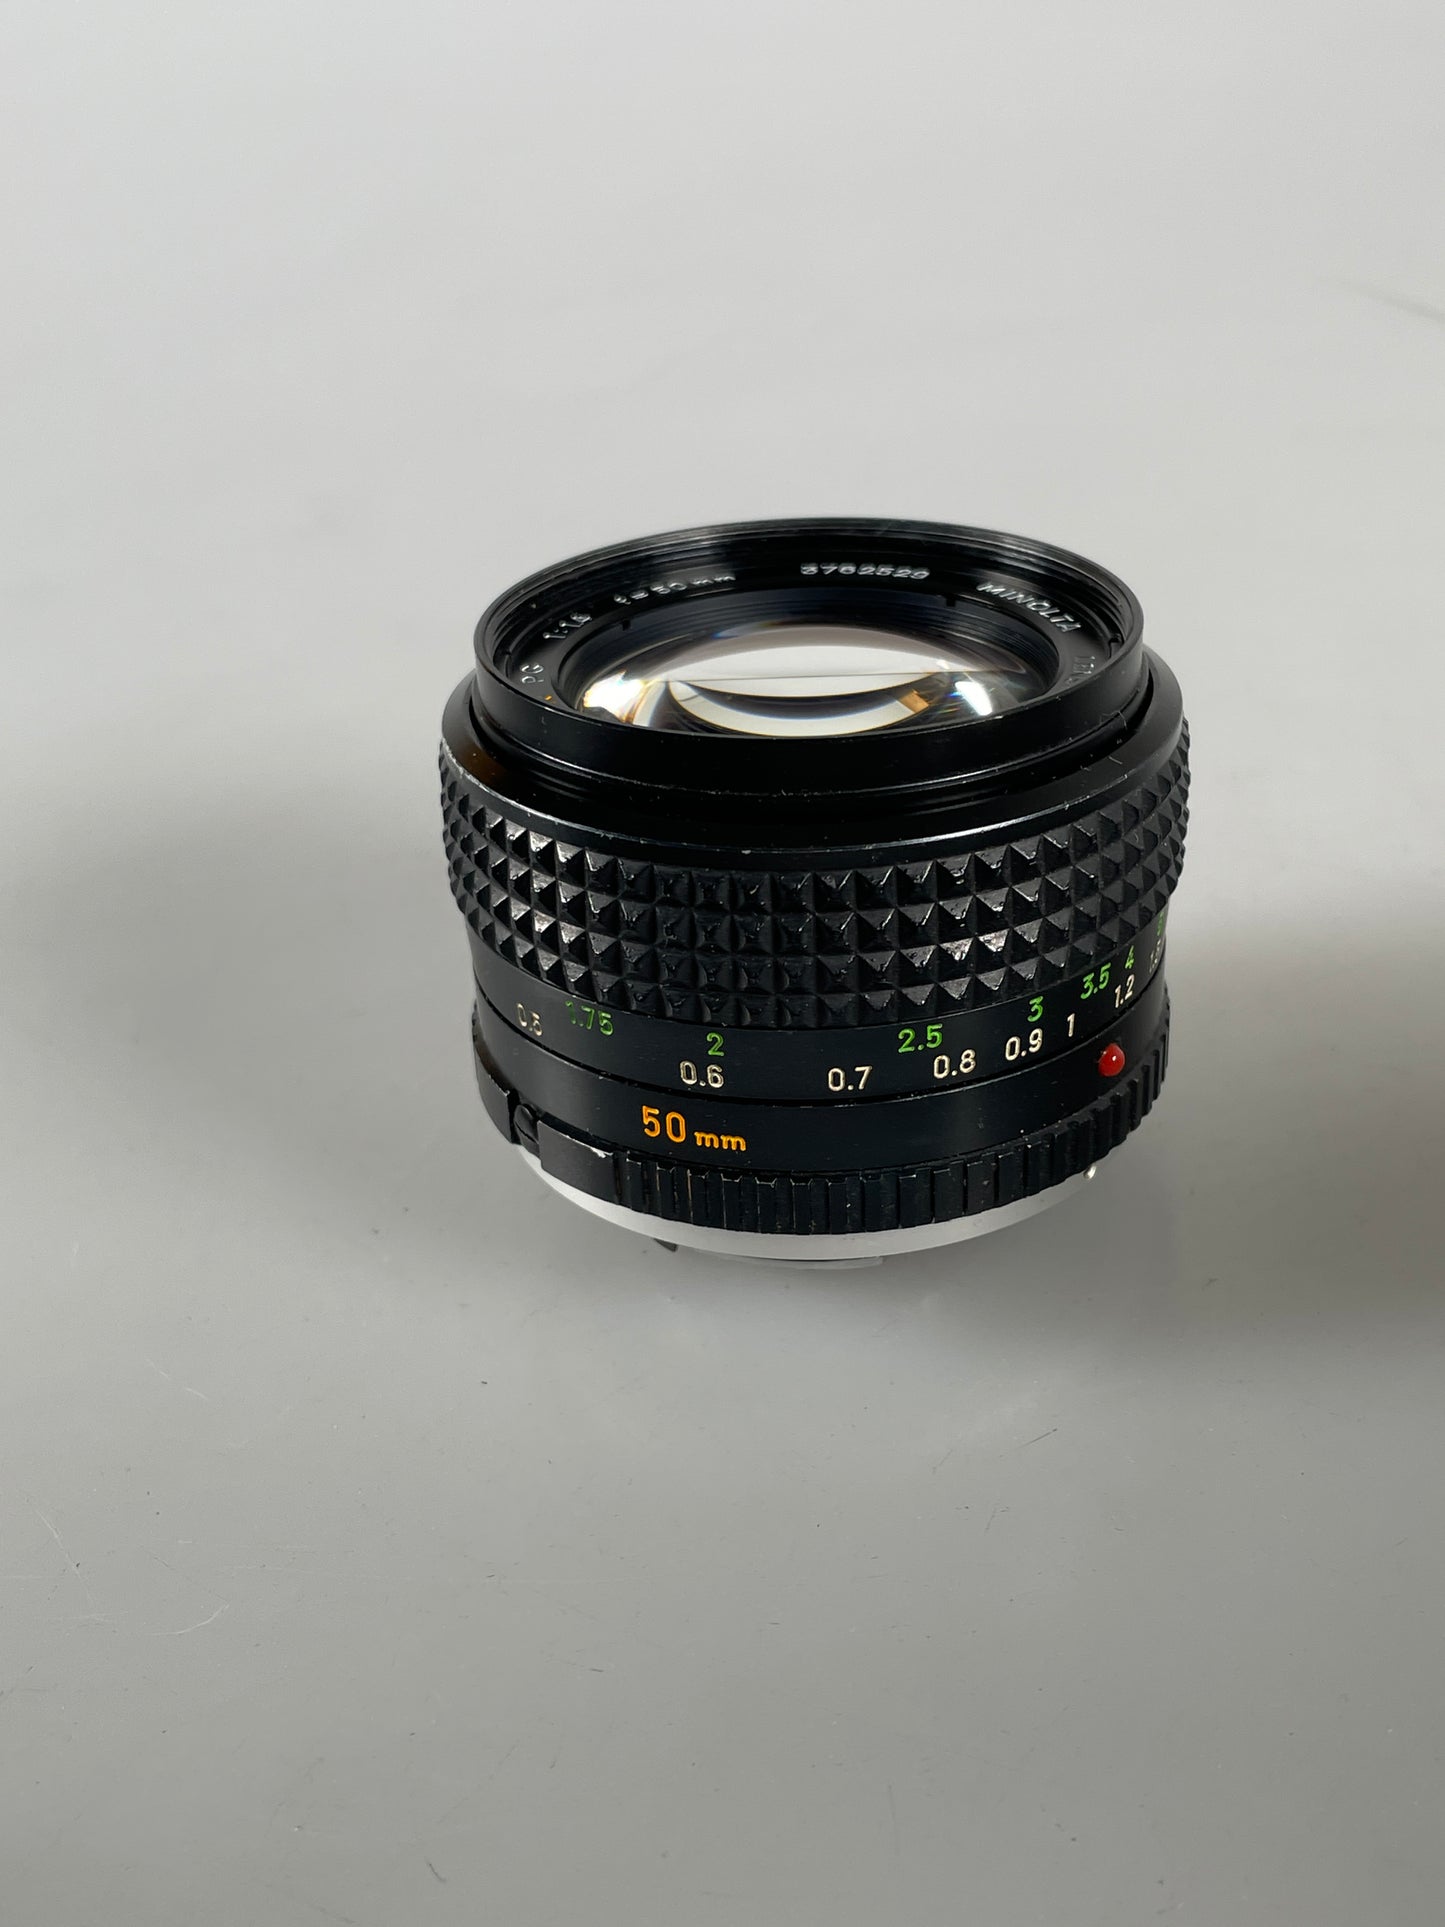 Minolta MC Rokkor-X PG 50mm f1.4 manual focus lens